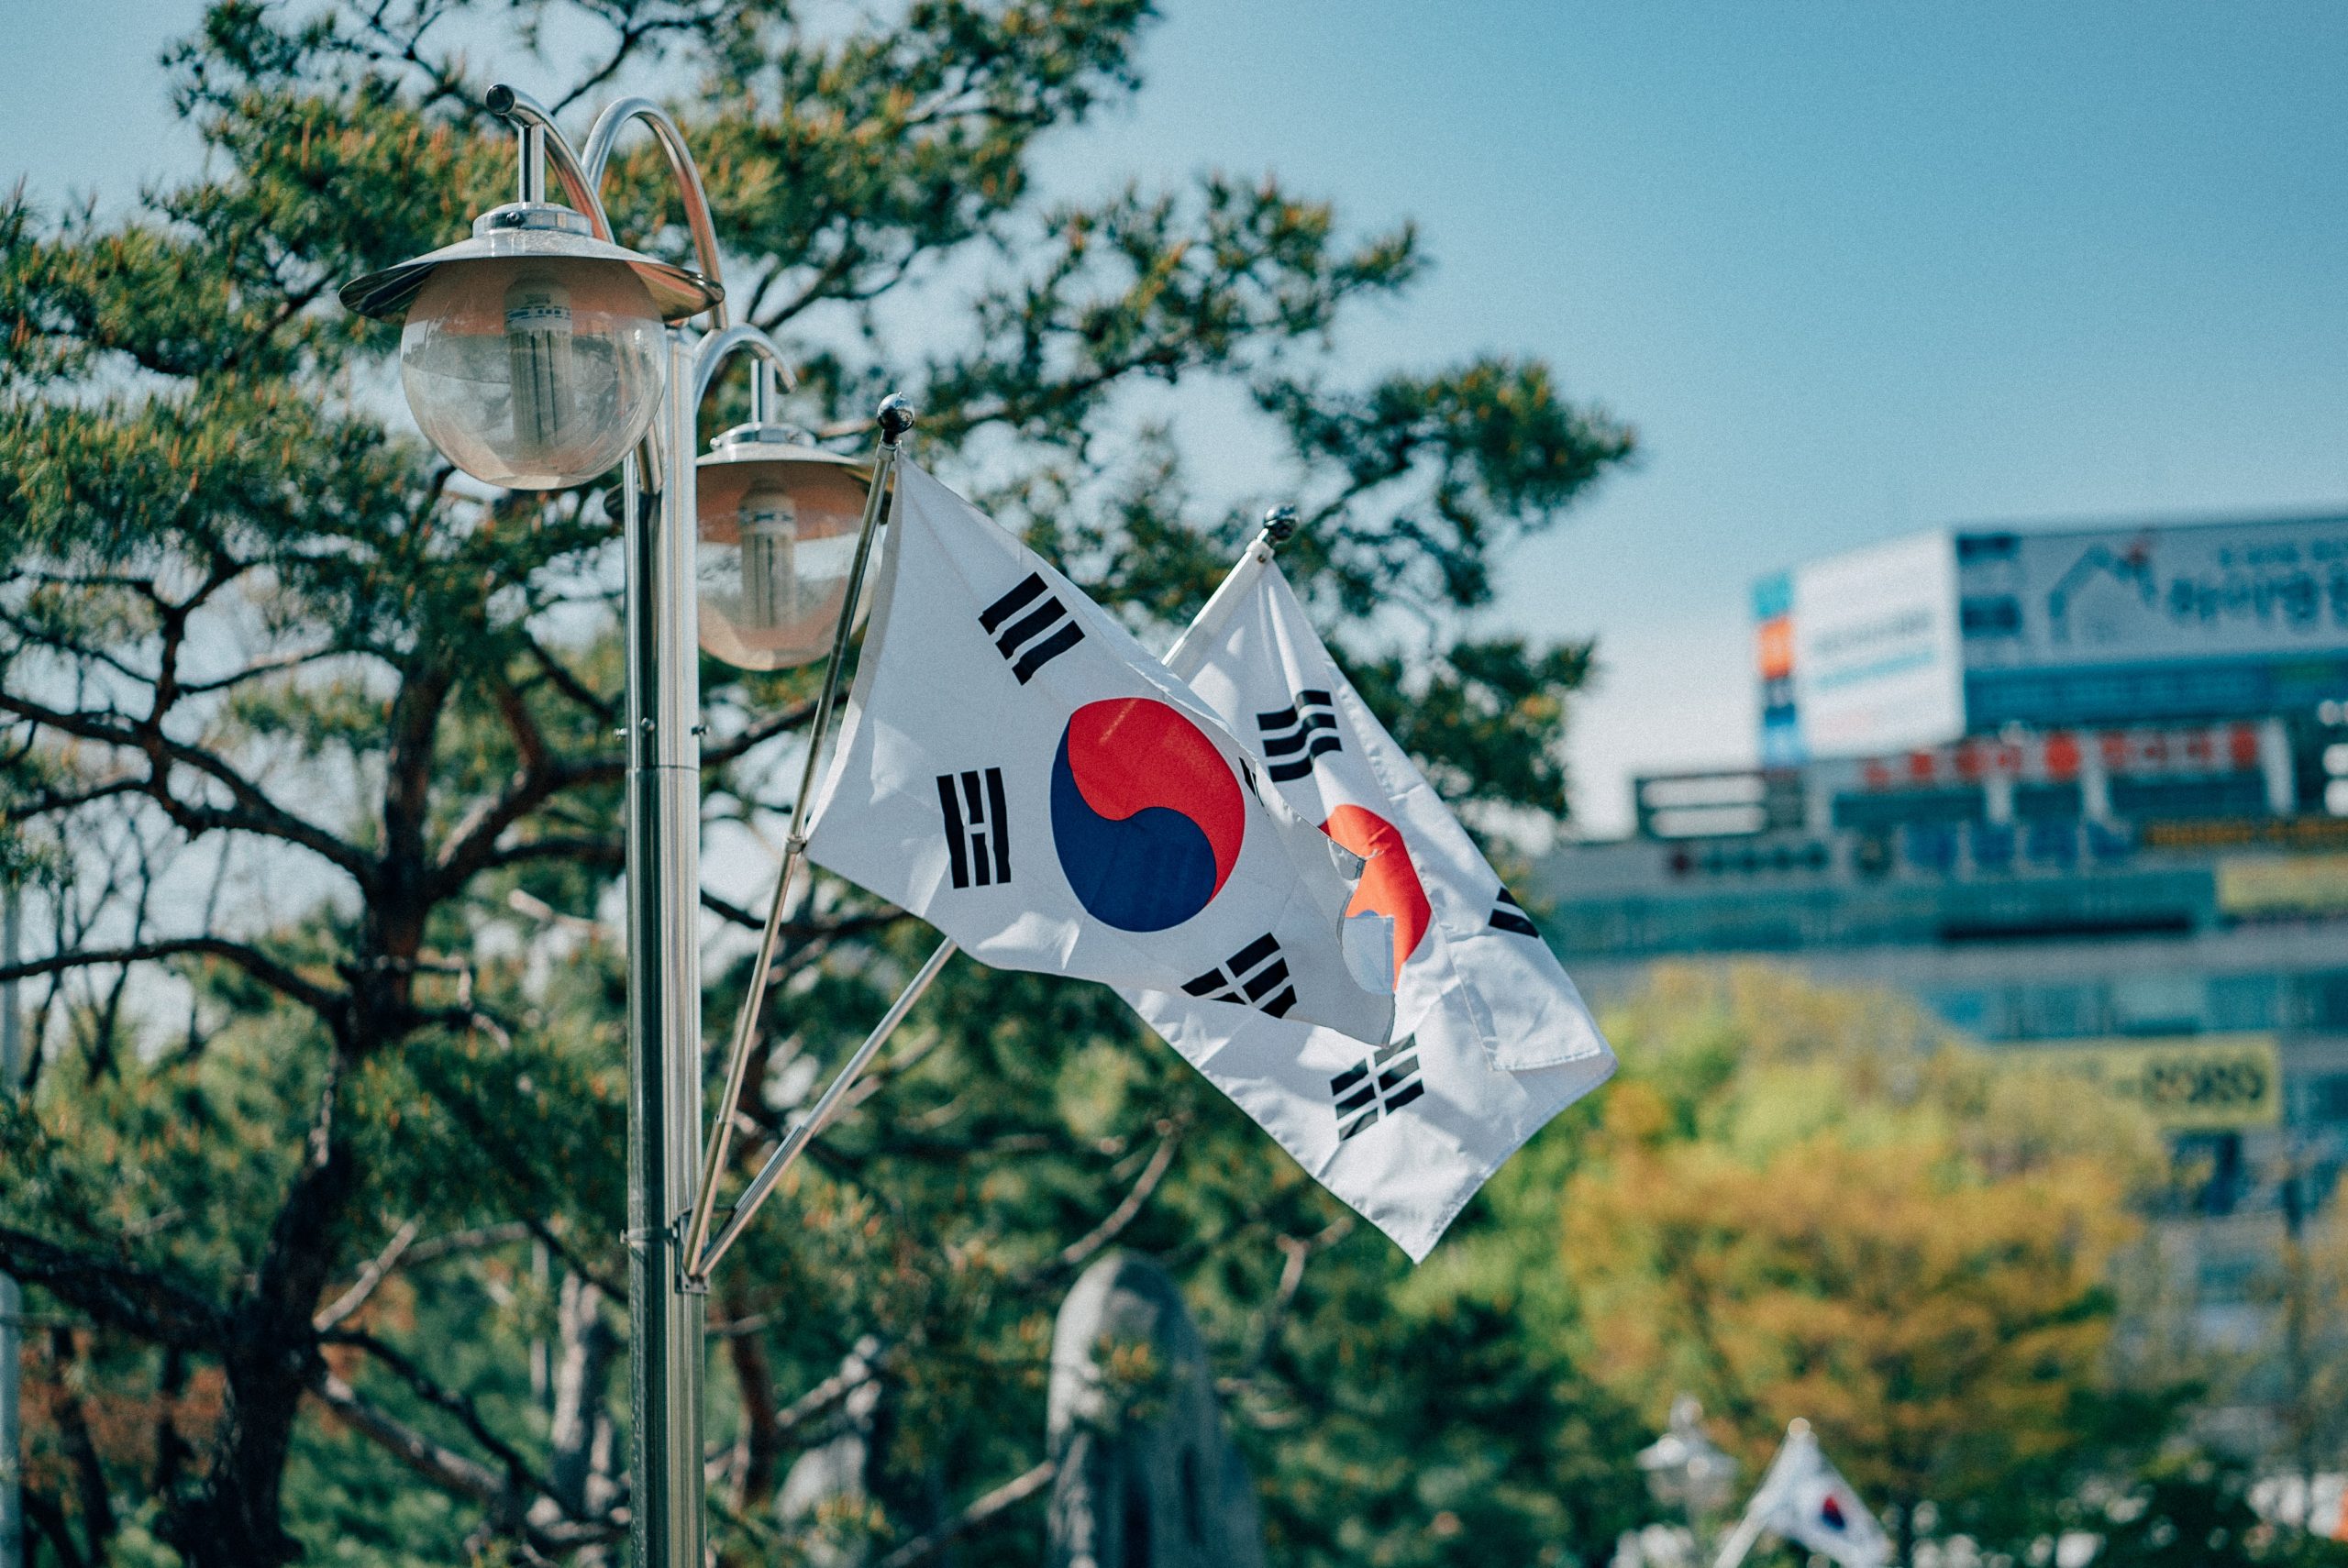  مطالبة الشركات في كوريا الجنوبية بالكشف عن ممتلكات التشفير بموجب القواعد التنظيمية الجديدة